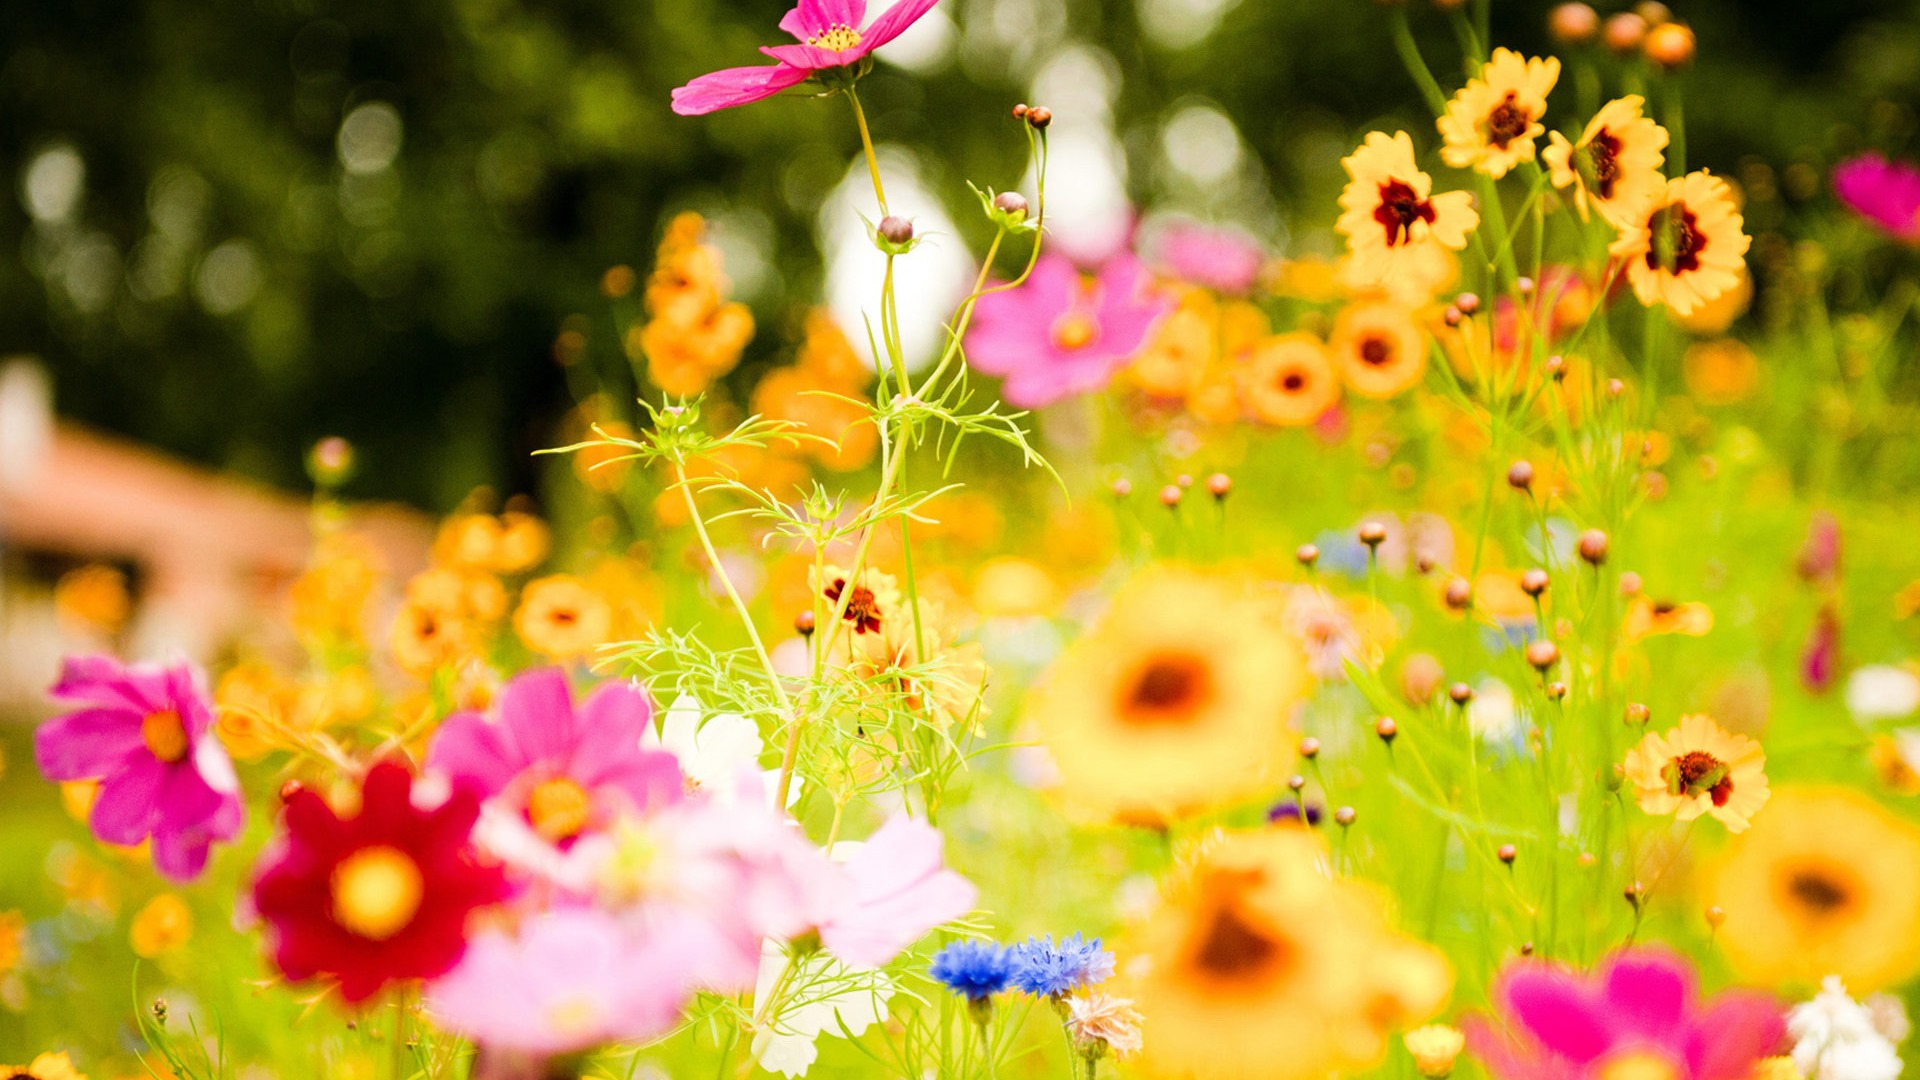 flores y plantas frescas de primavera fondos de pantalla con temas #6 - 1920x1080